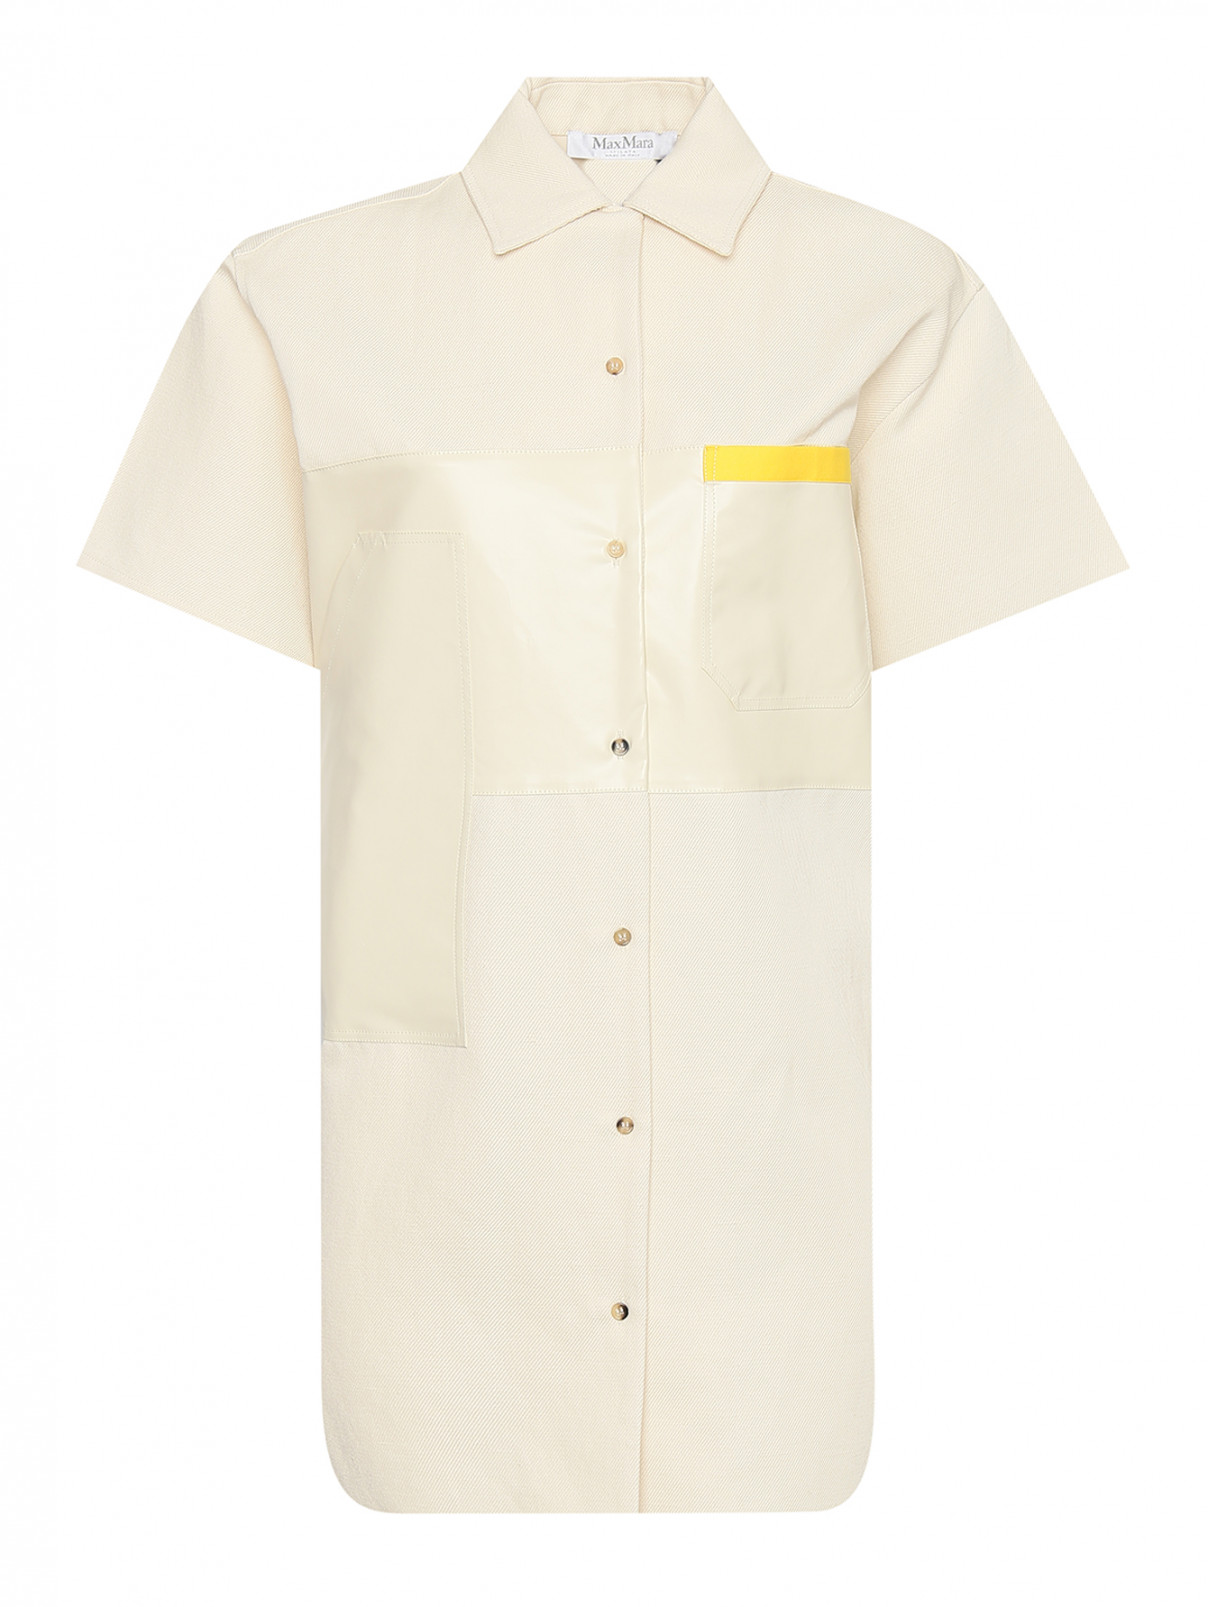 Платье-рубашка из хлопка и льна с кармнами Max Mara  –  Общий вид  – Цвет:  Бежевый